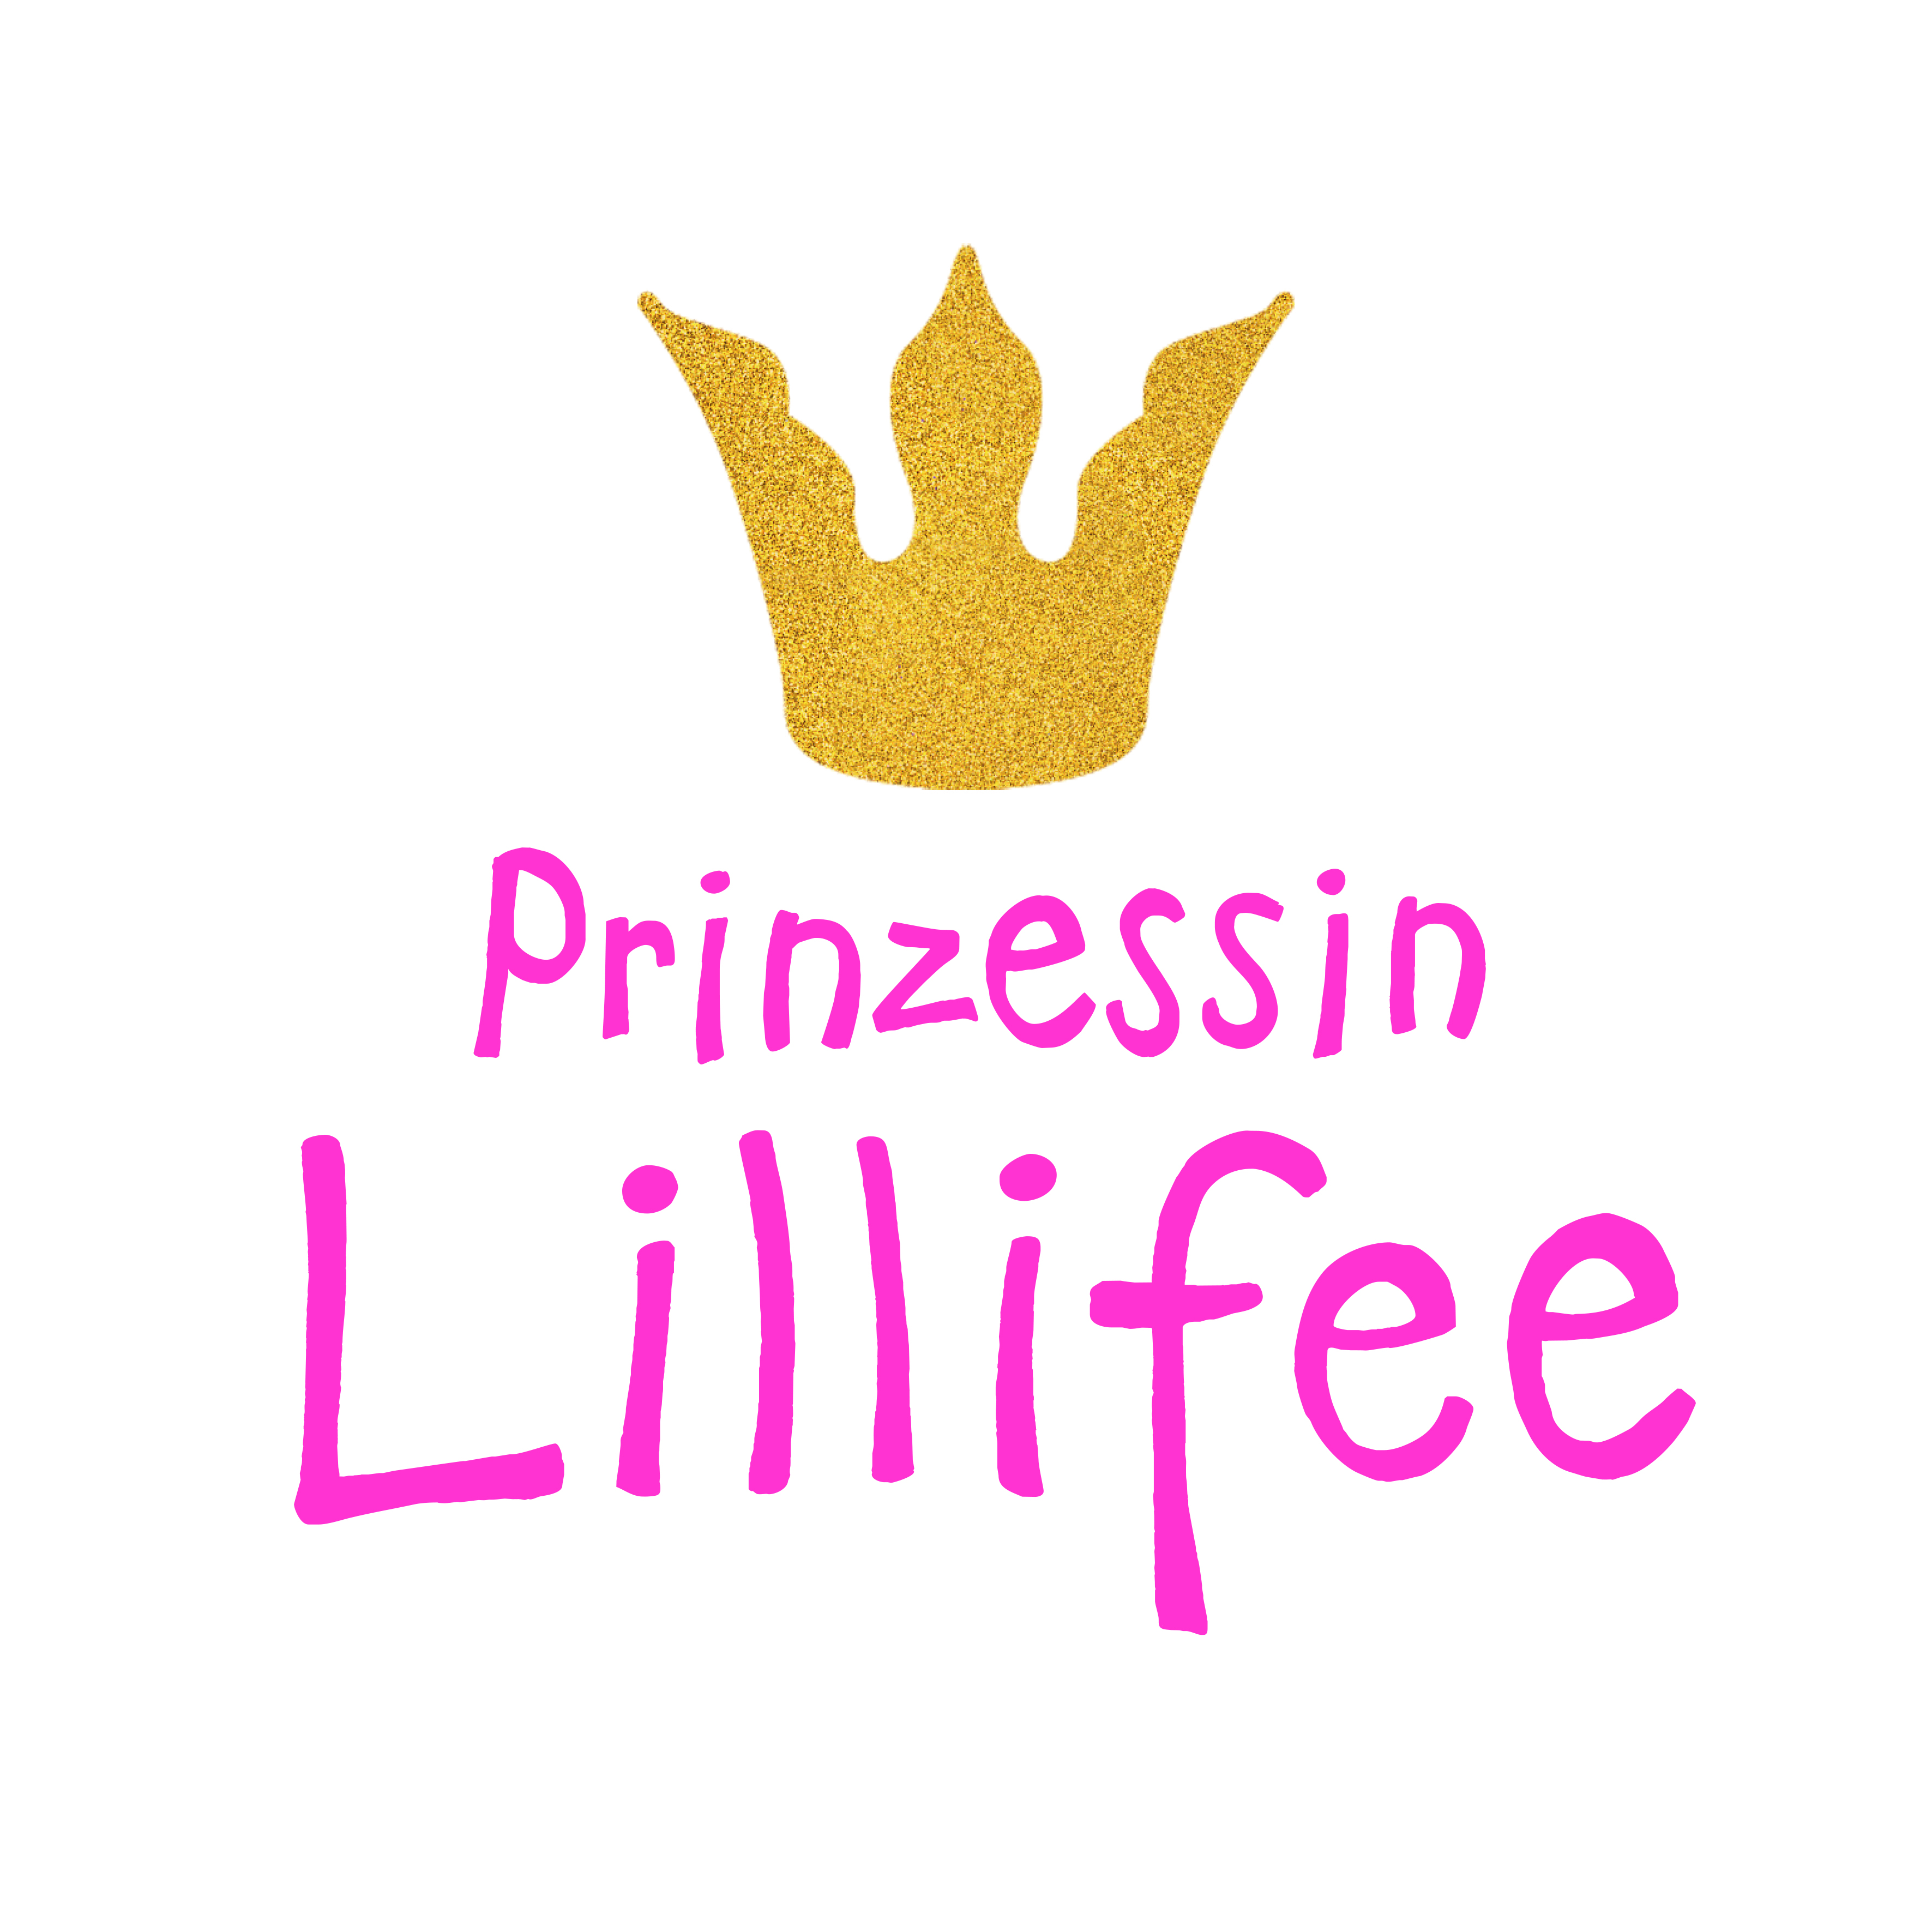 Puppenkleid "Prinzessin Lillifee" mit Glitzerkrone und Augenmaske, 3-teilig, Gr. 35-45 cm